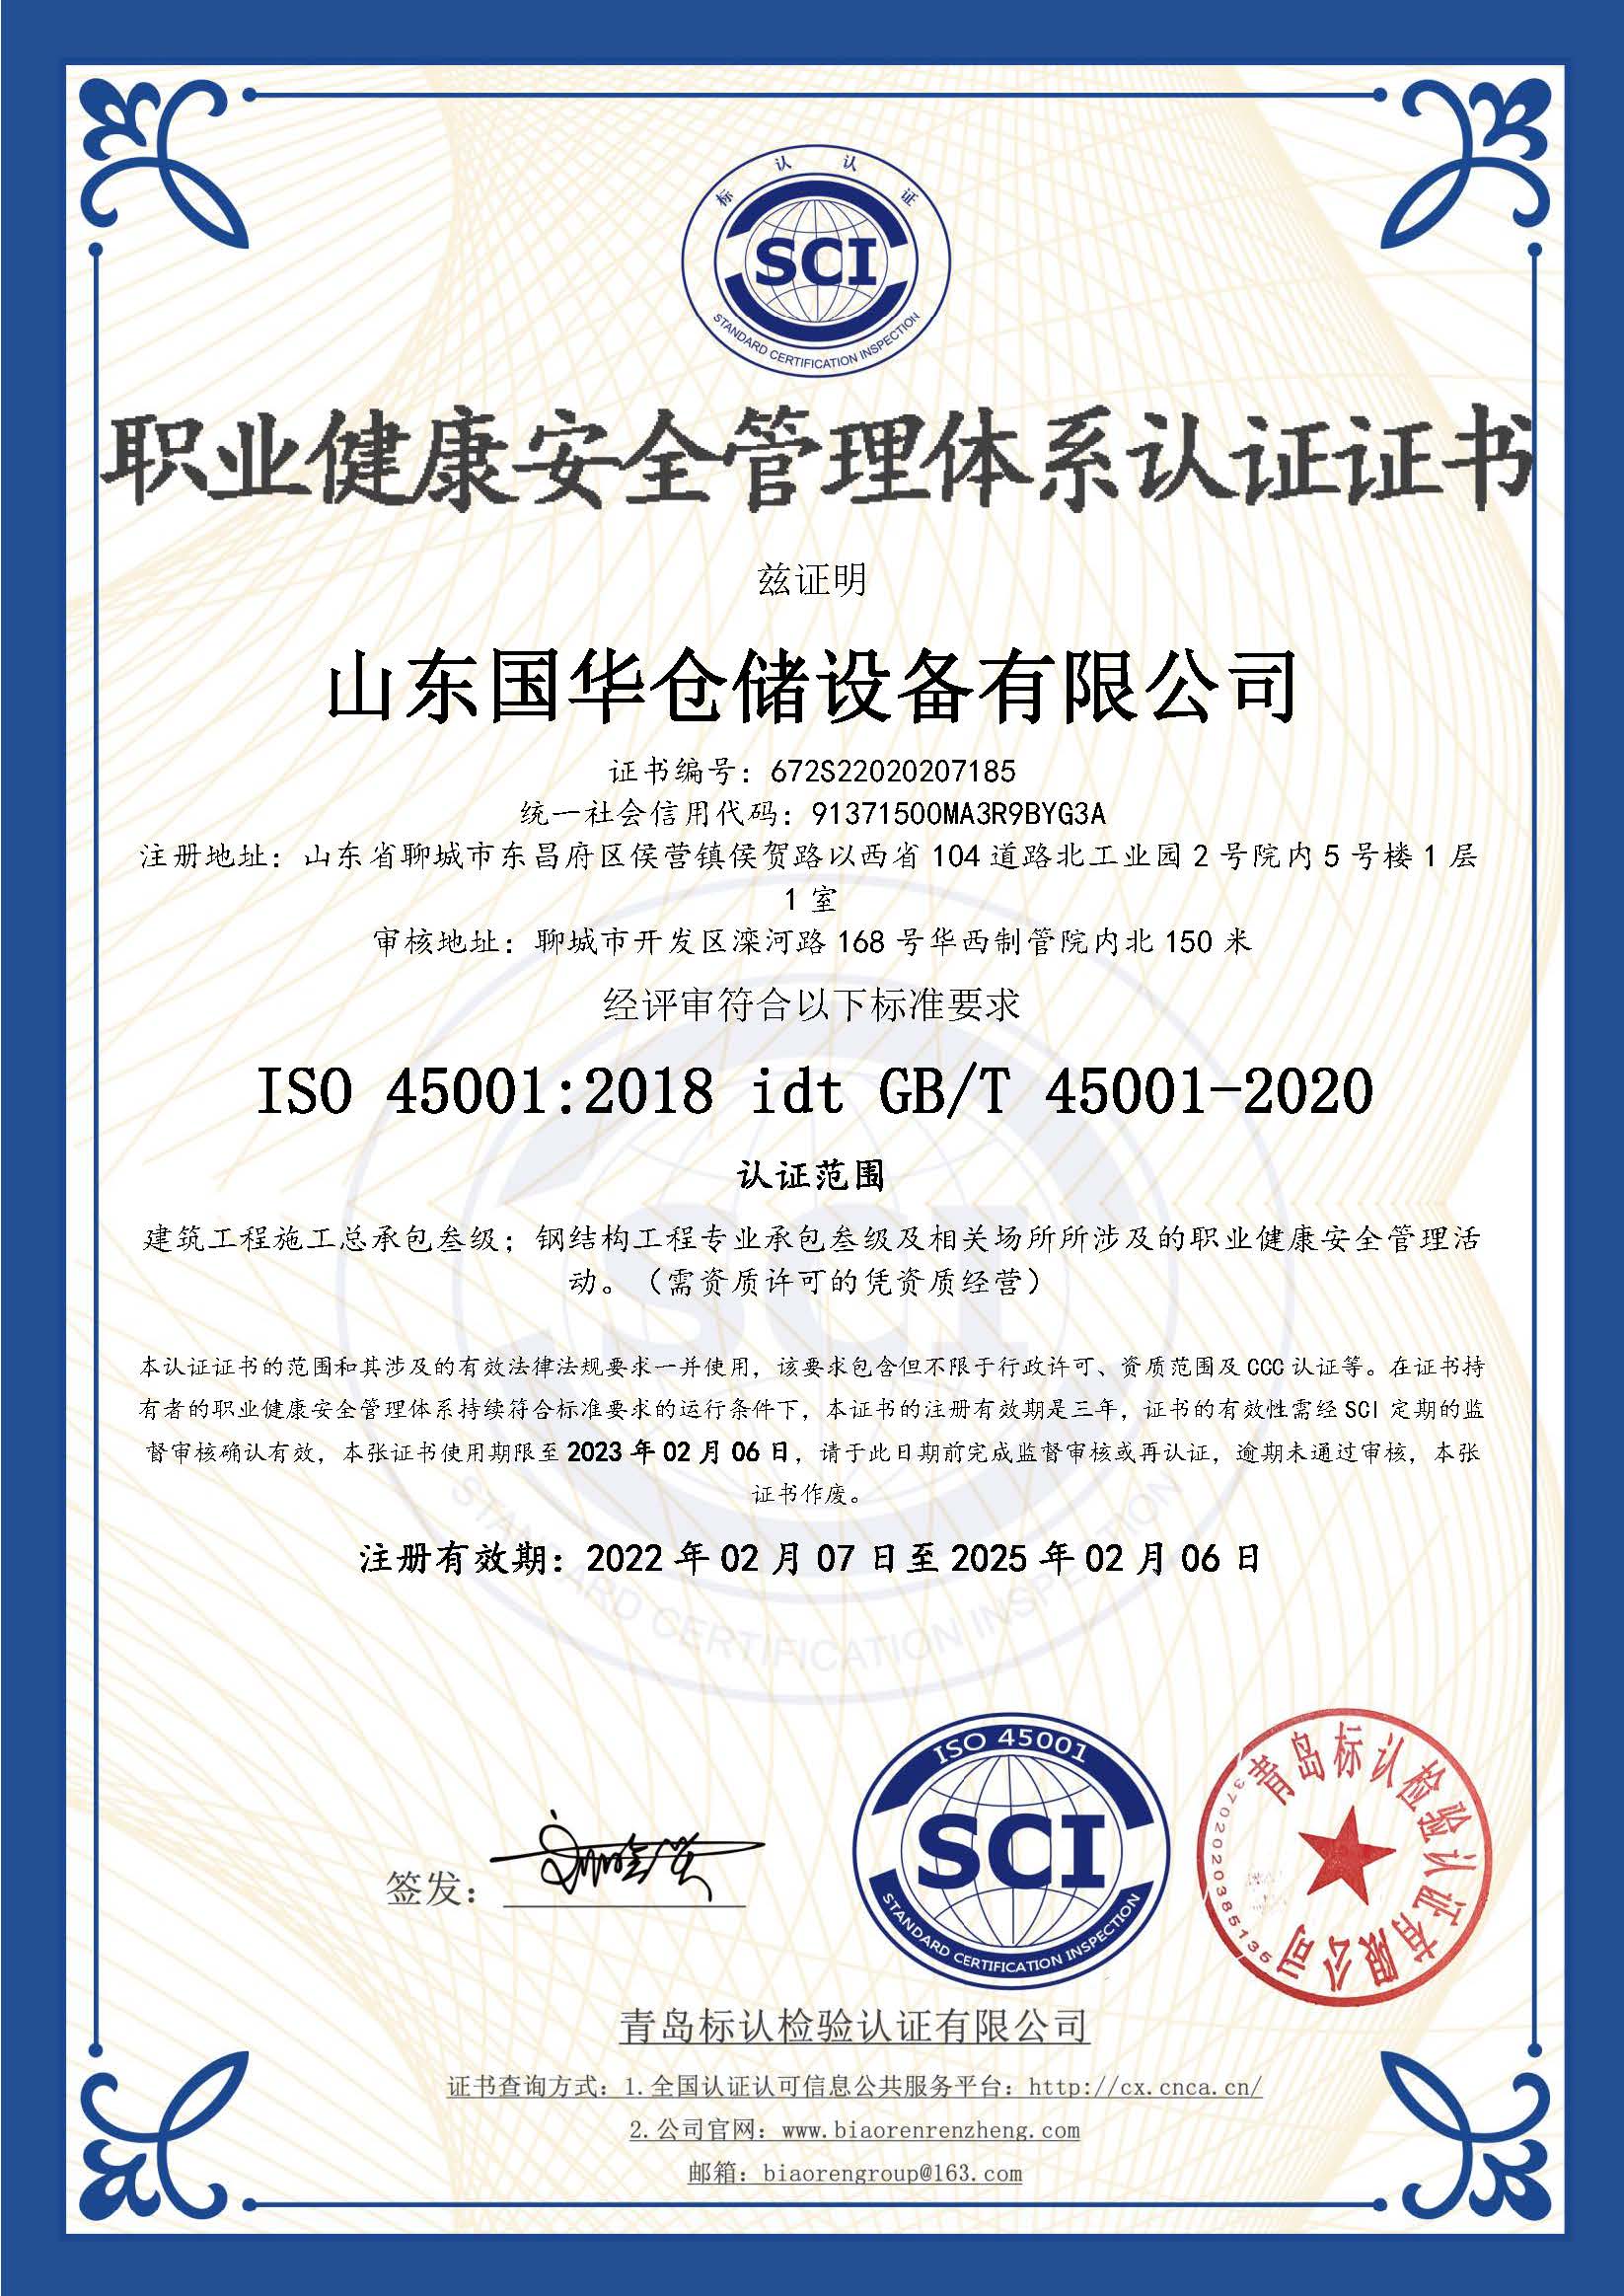 福州钢板仓职业健康安全管理体系认证证书